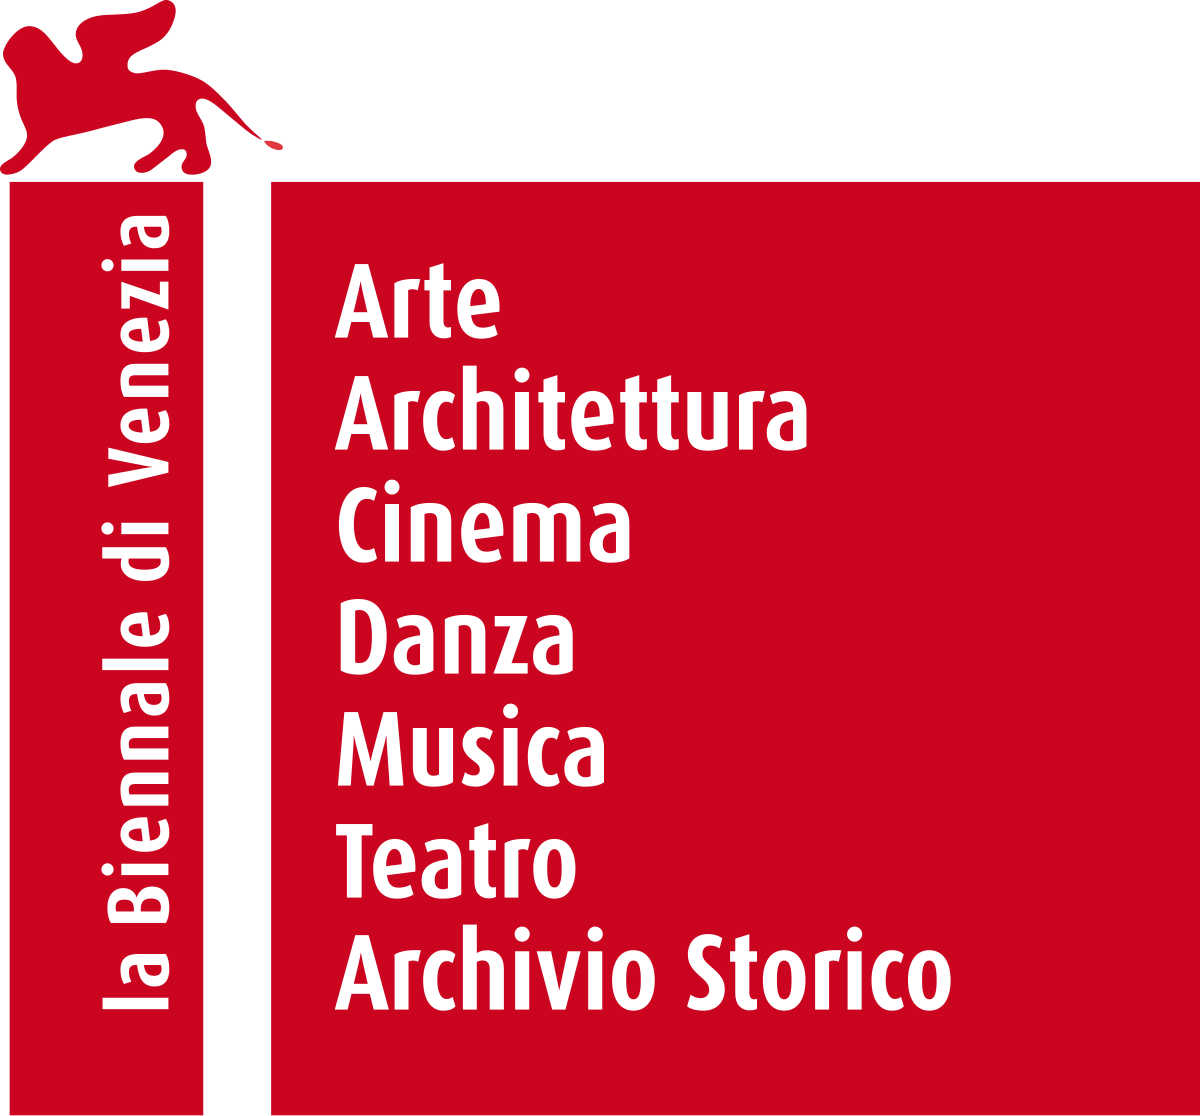 Venice Film Festival - Wikipedia